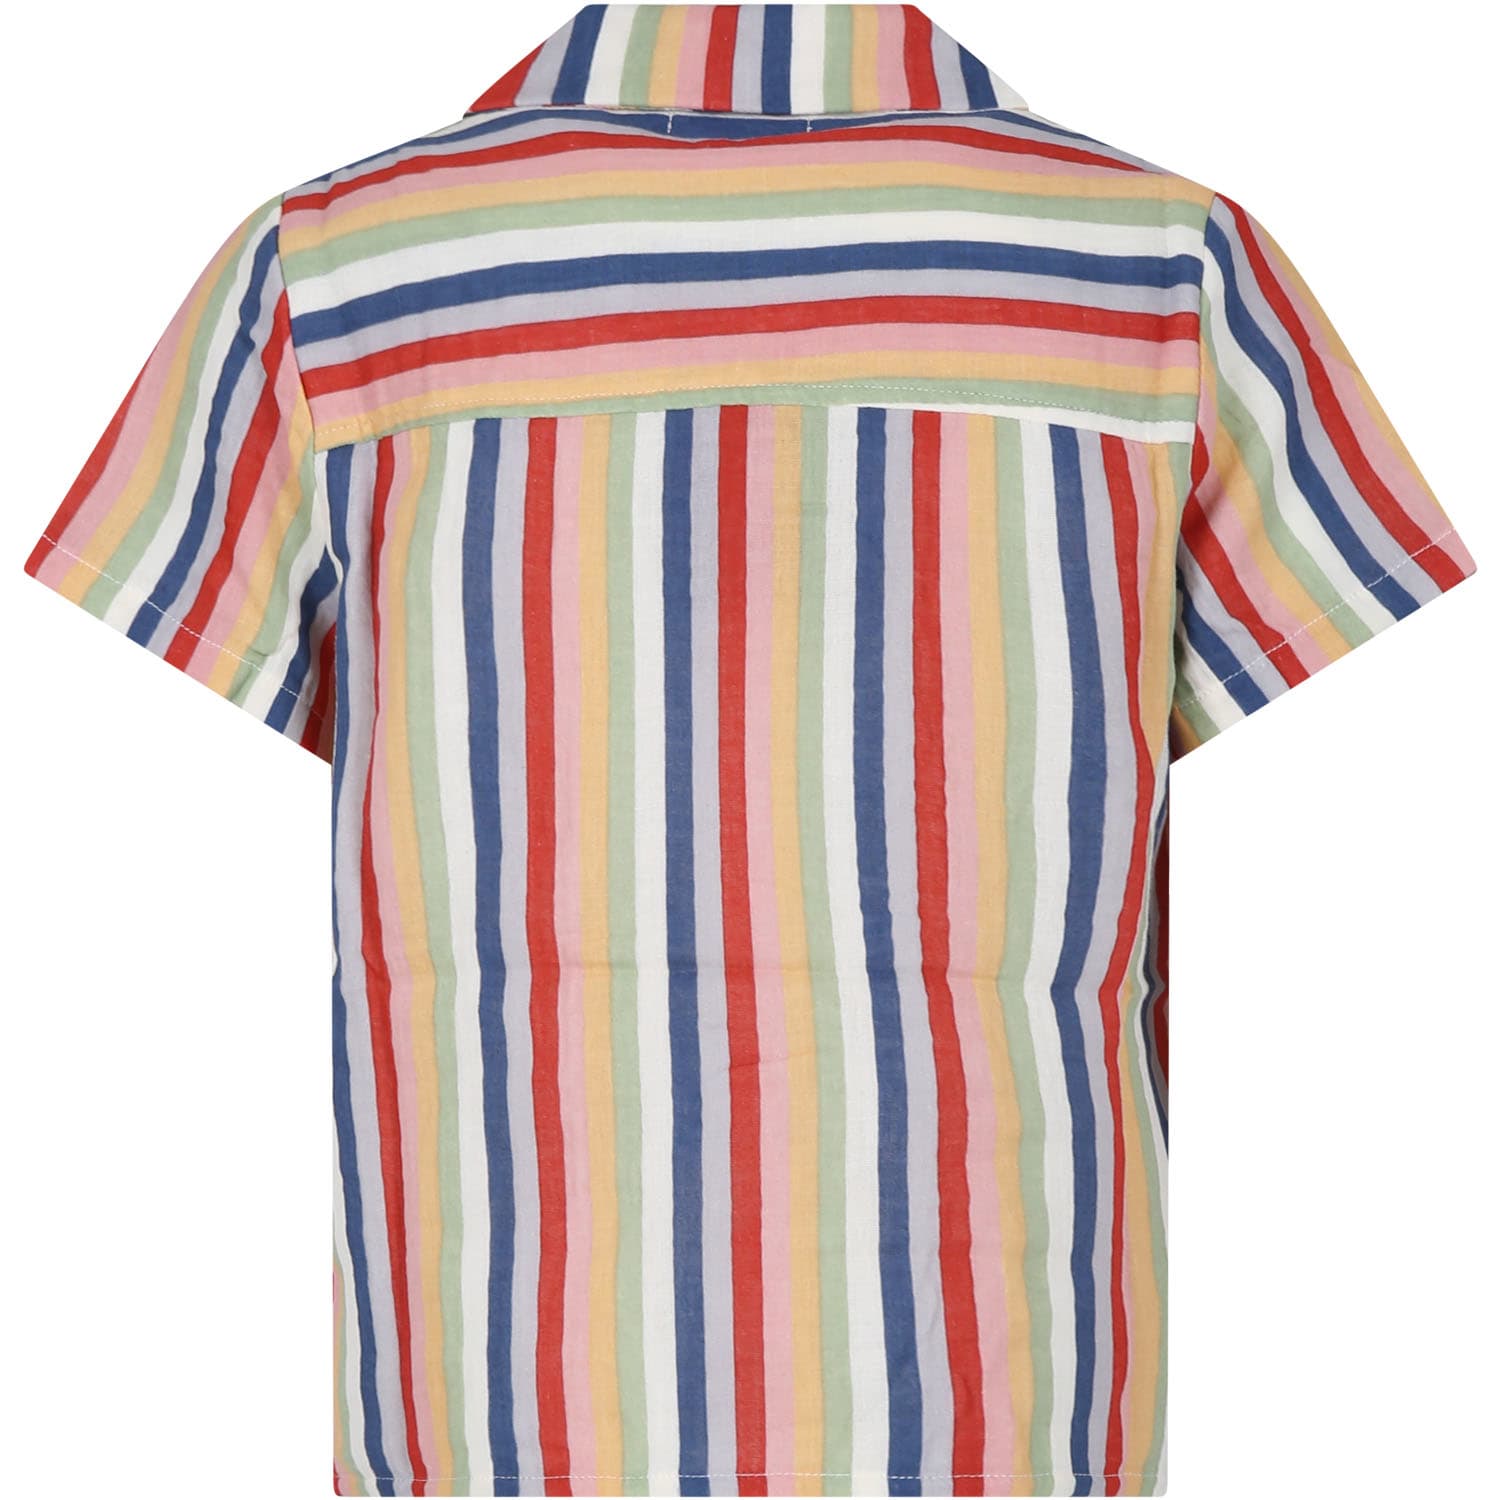 Shop Coco Au Lait Multicolor Shirt For Kids With Stripes Pattern